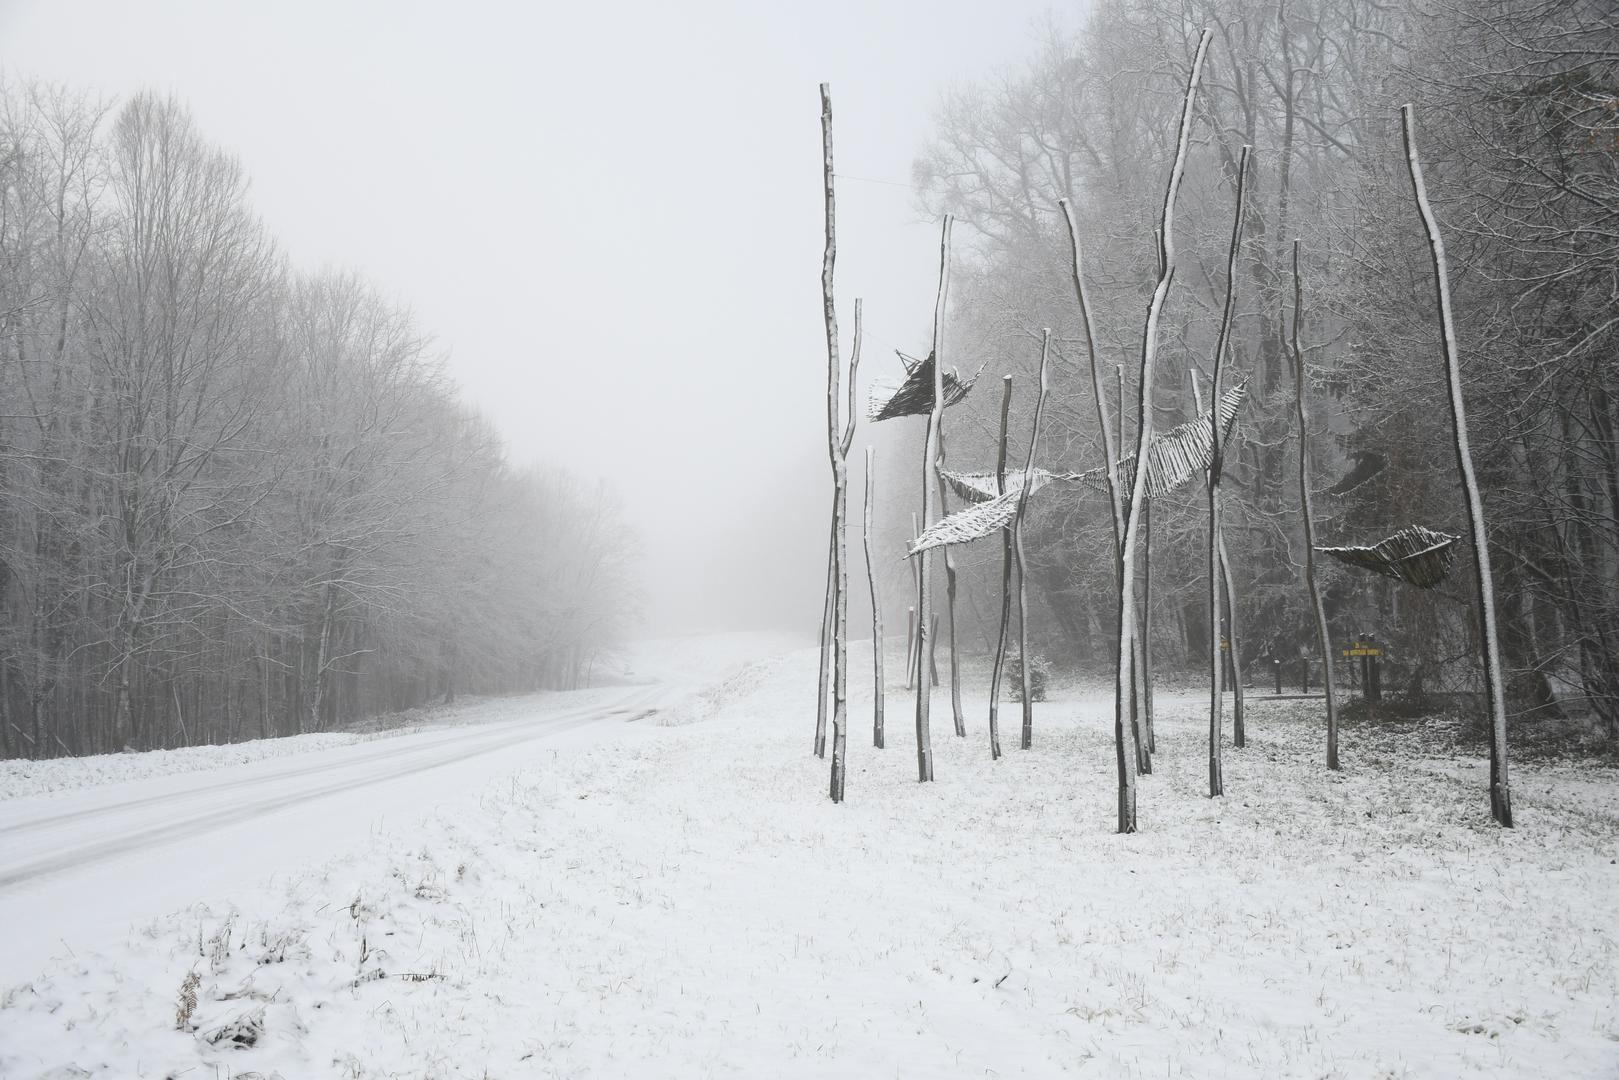 Bijeli pokrivač pokrio je cijelu šumu stvorio je pravi zimski ugođaj.